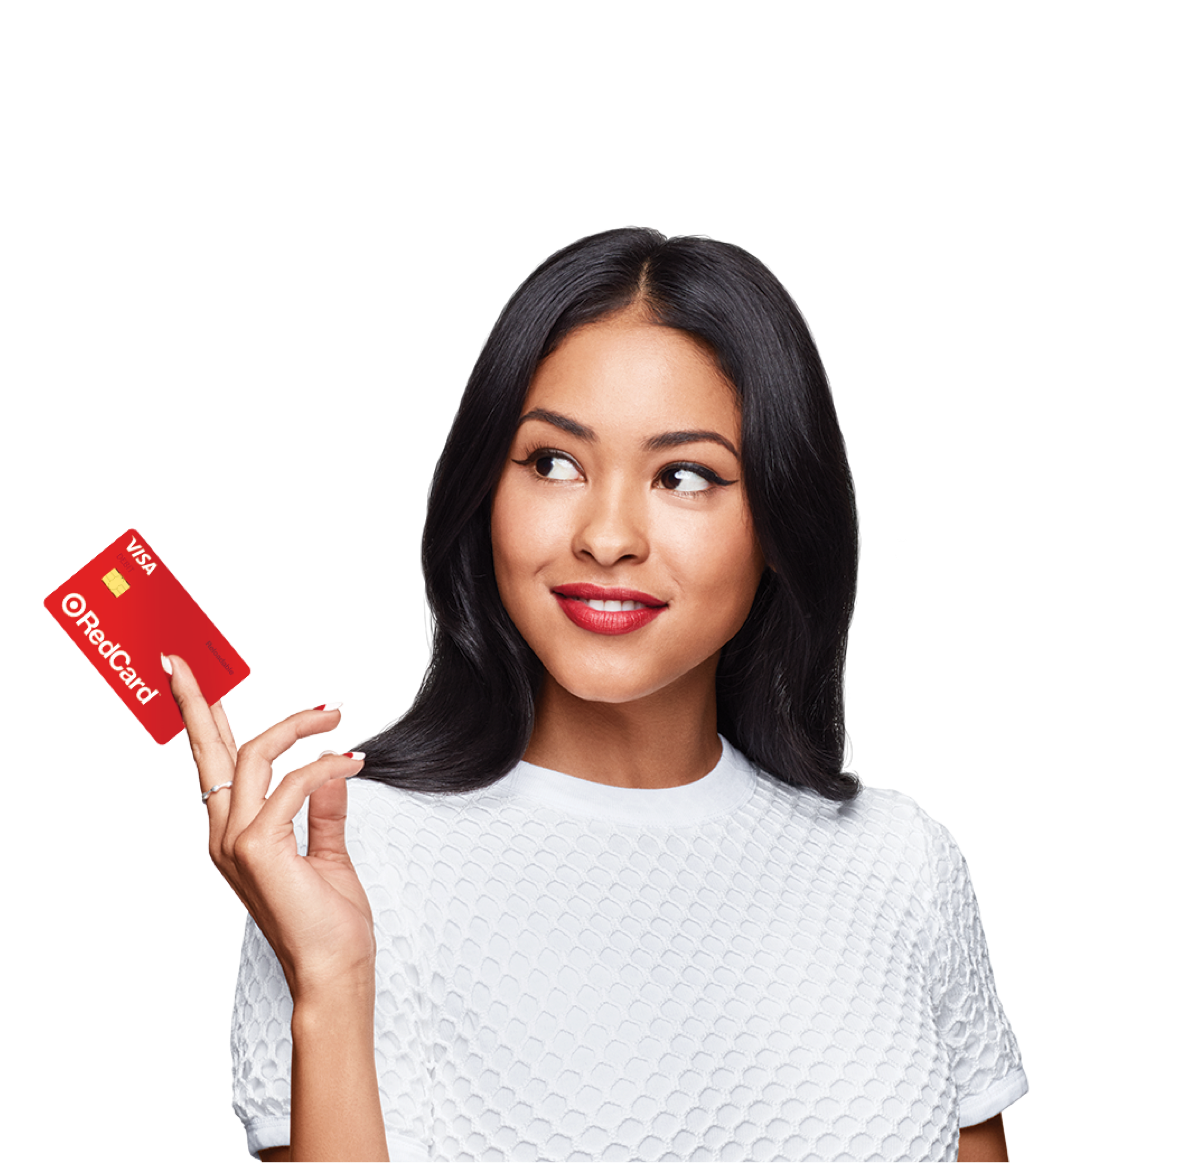 Reloadable Visa Debit Card, Save 5% at Target